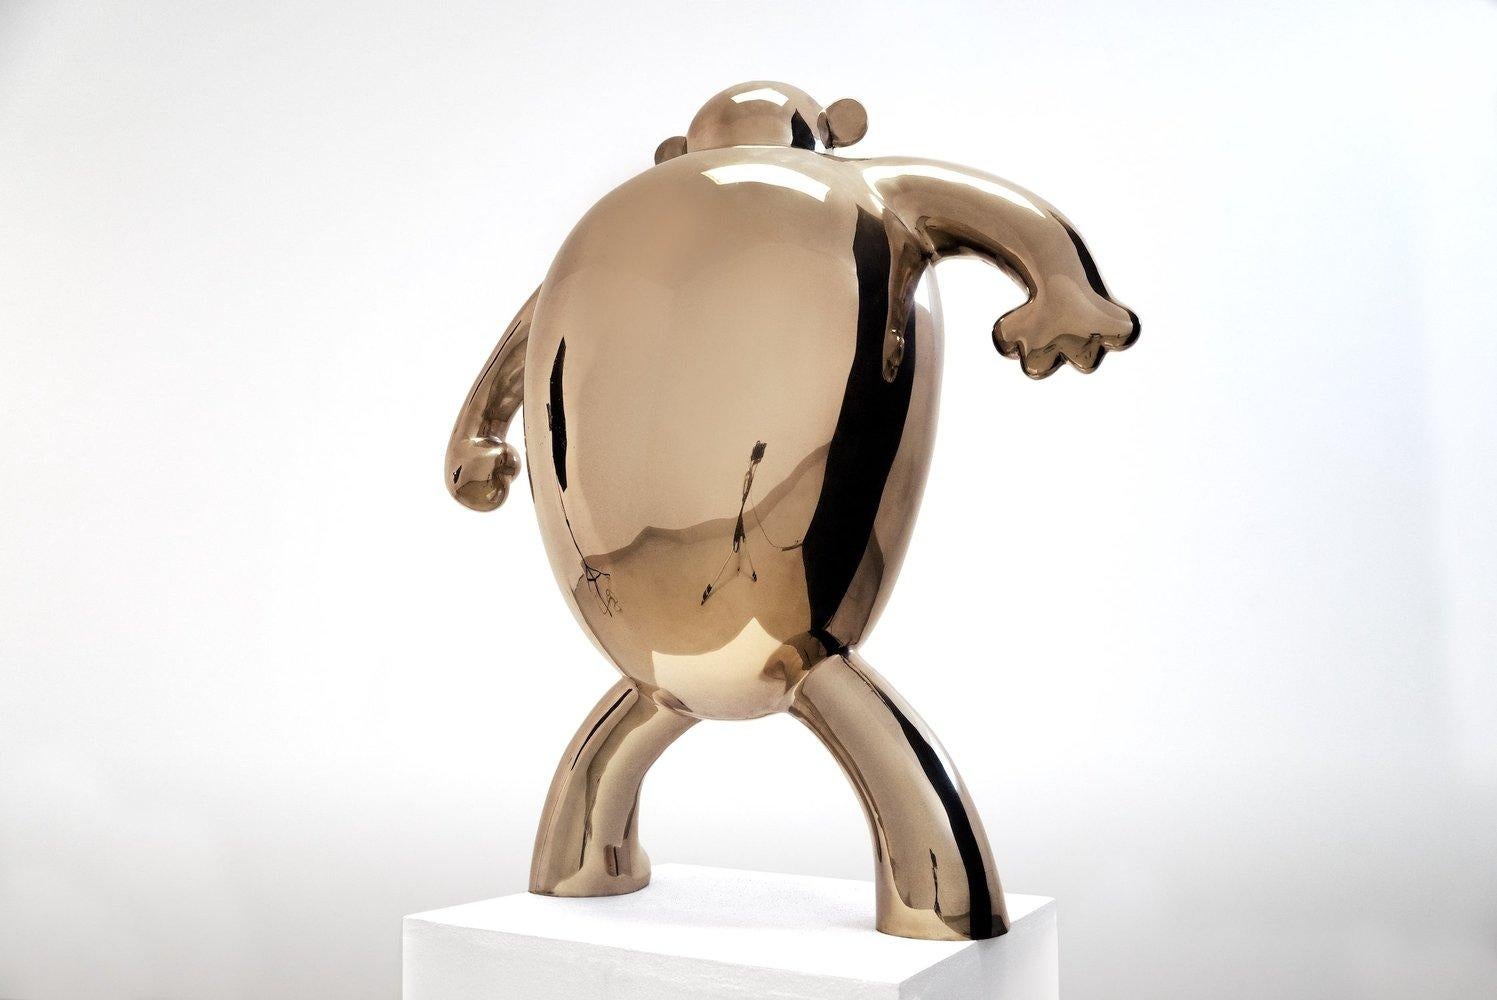 B.U.M. (für Big Ugly Monkey), aus der Serie Monsters. Skulptur aus polierter Bronze, 88 cm × 83 cm × 35 cm.
Auflage von 8 + 4 A.P.